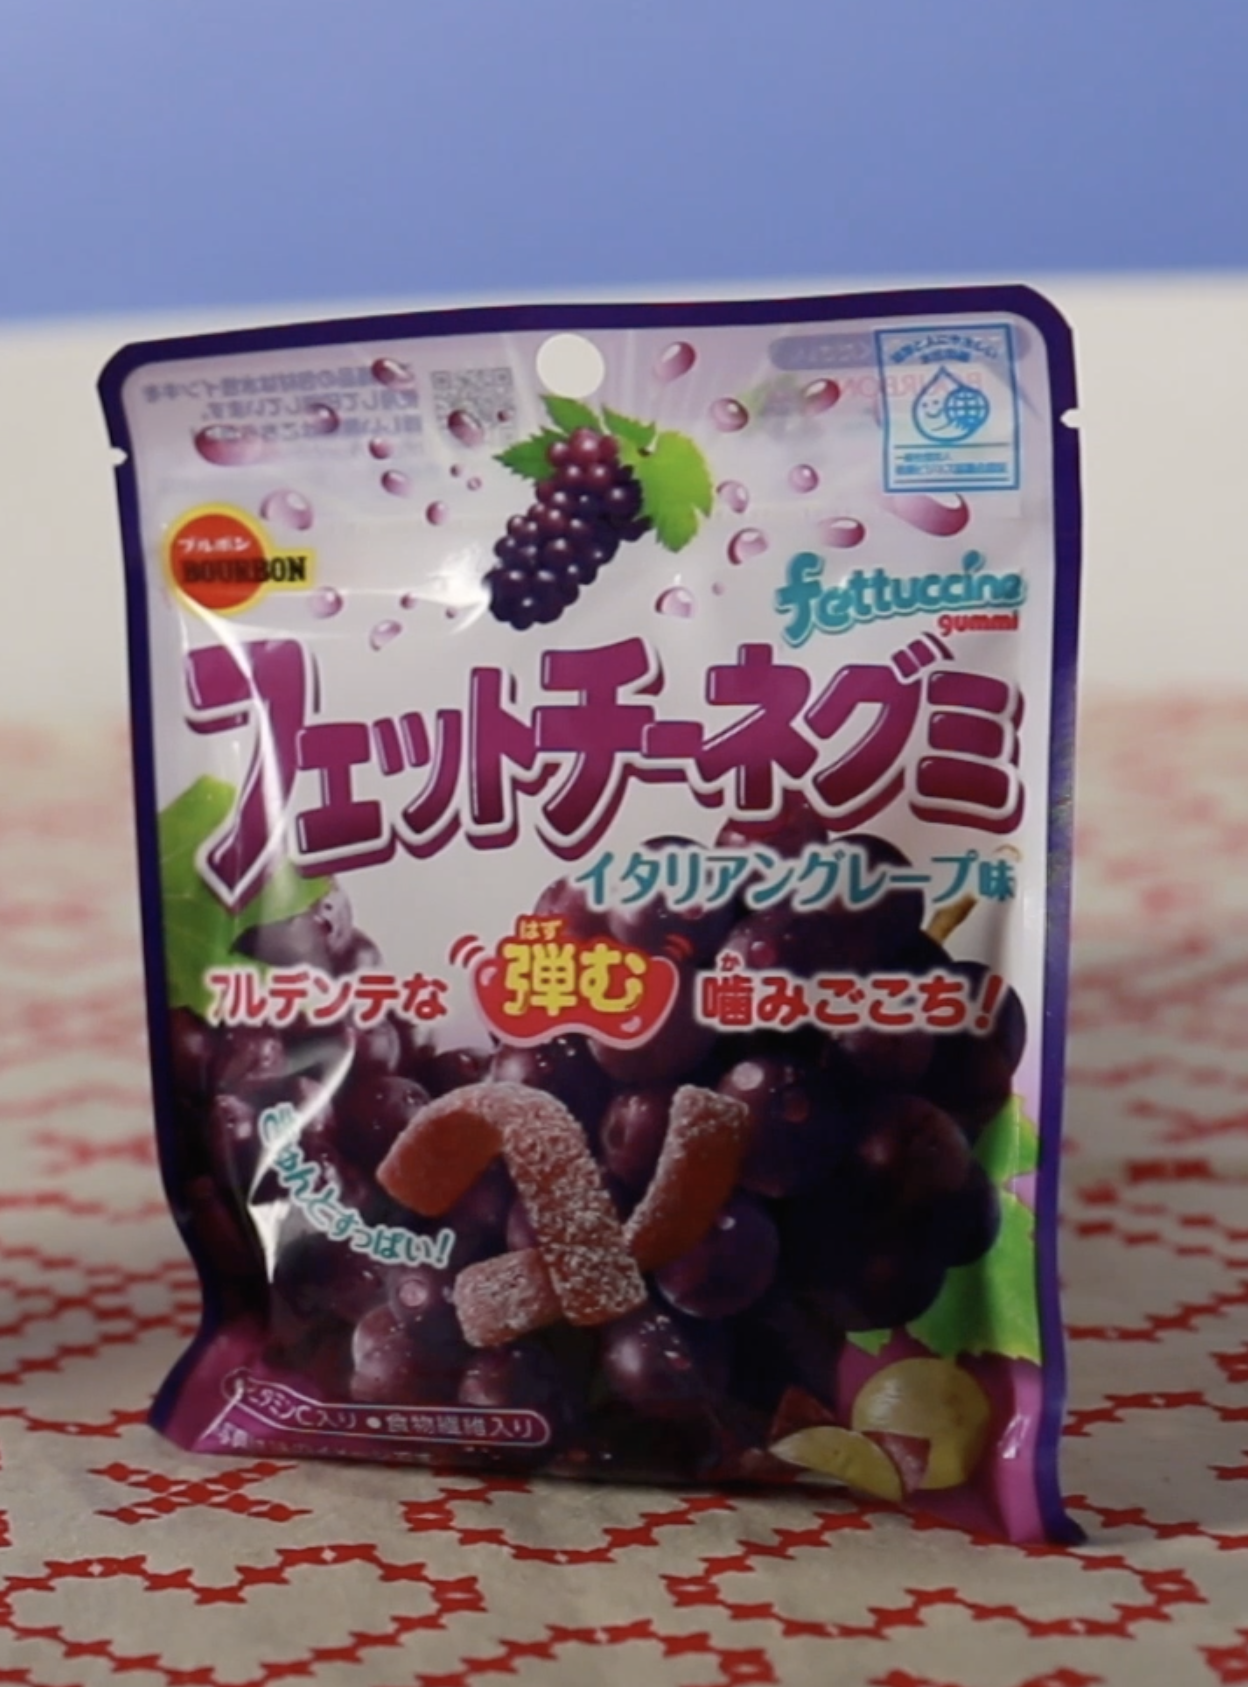 匂いが強烈 日本のお菓子を食べた外国人の反応が意外すぎた